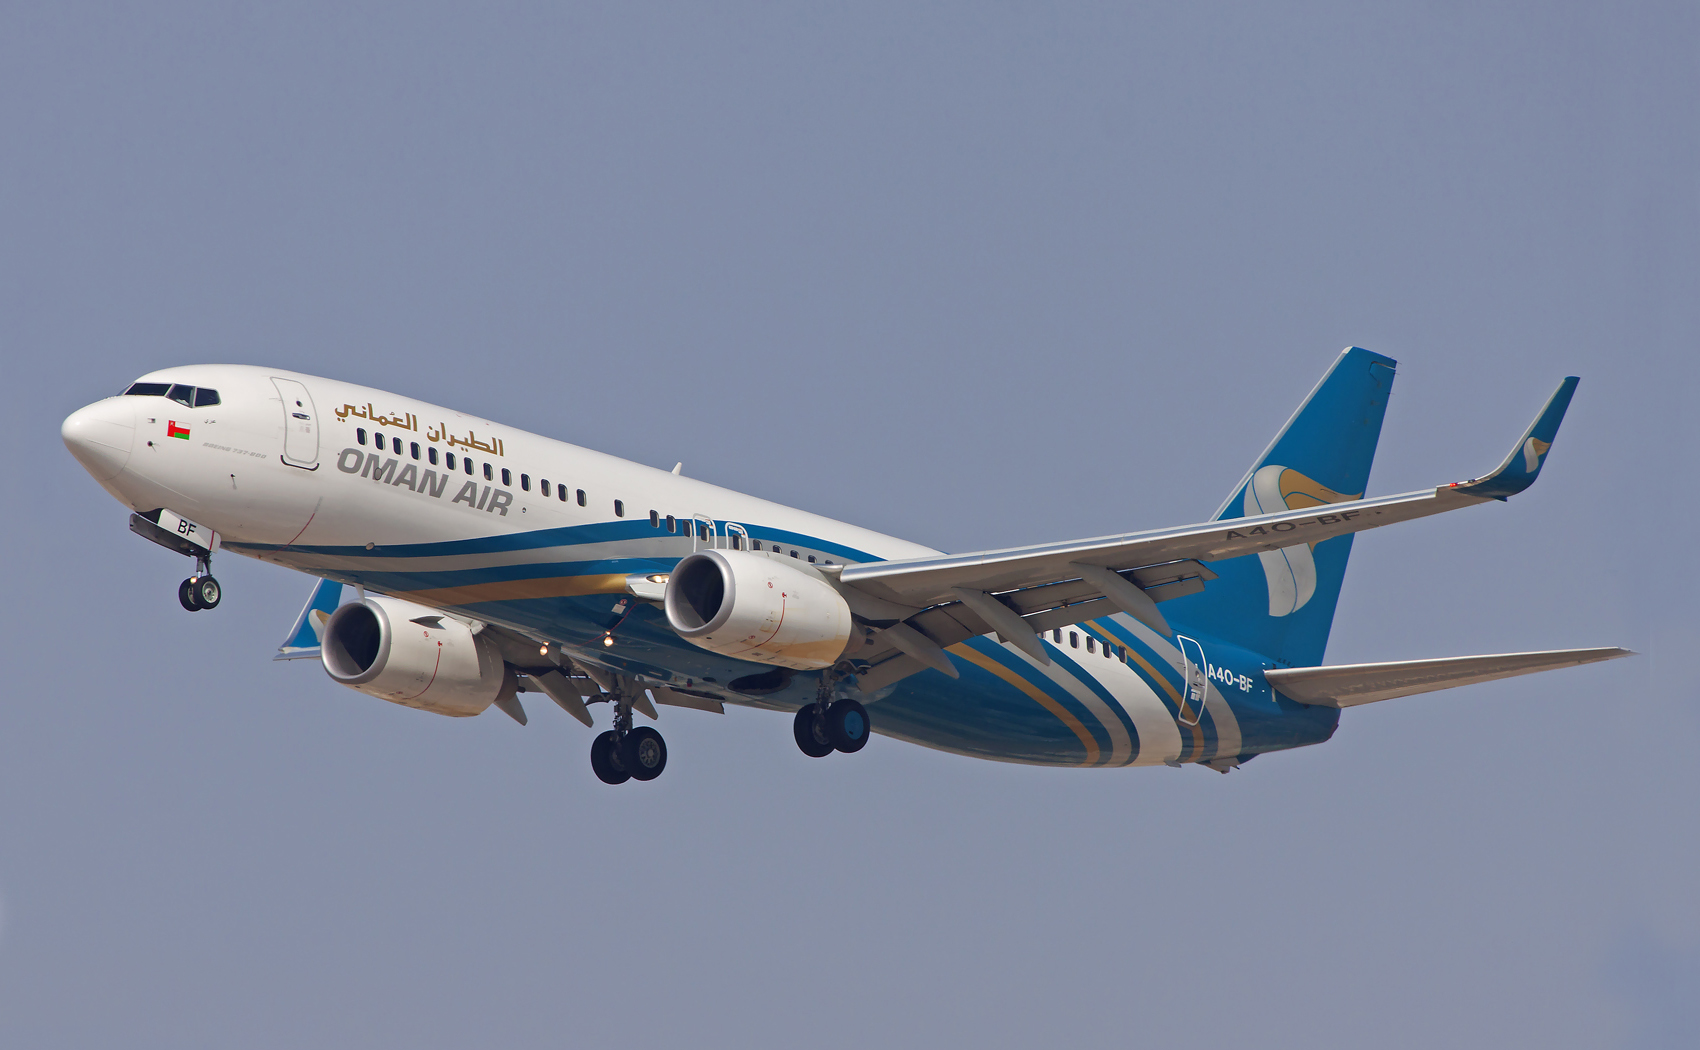 Oman Air pilots’ skills save passengers, aircraft